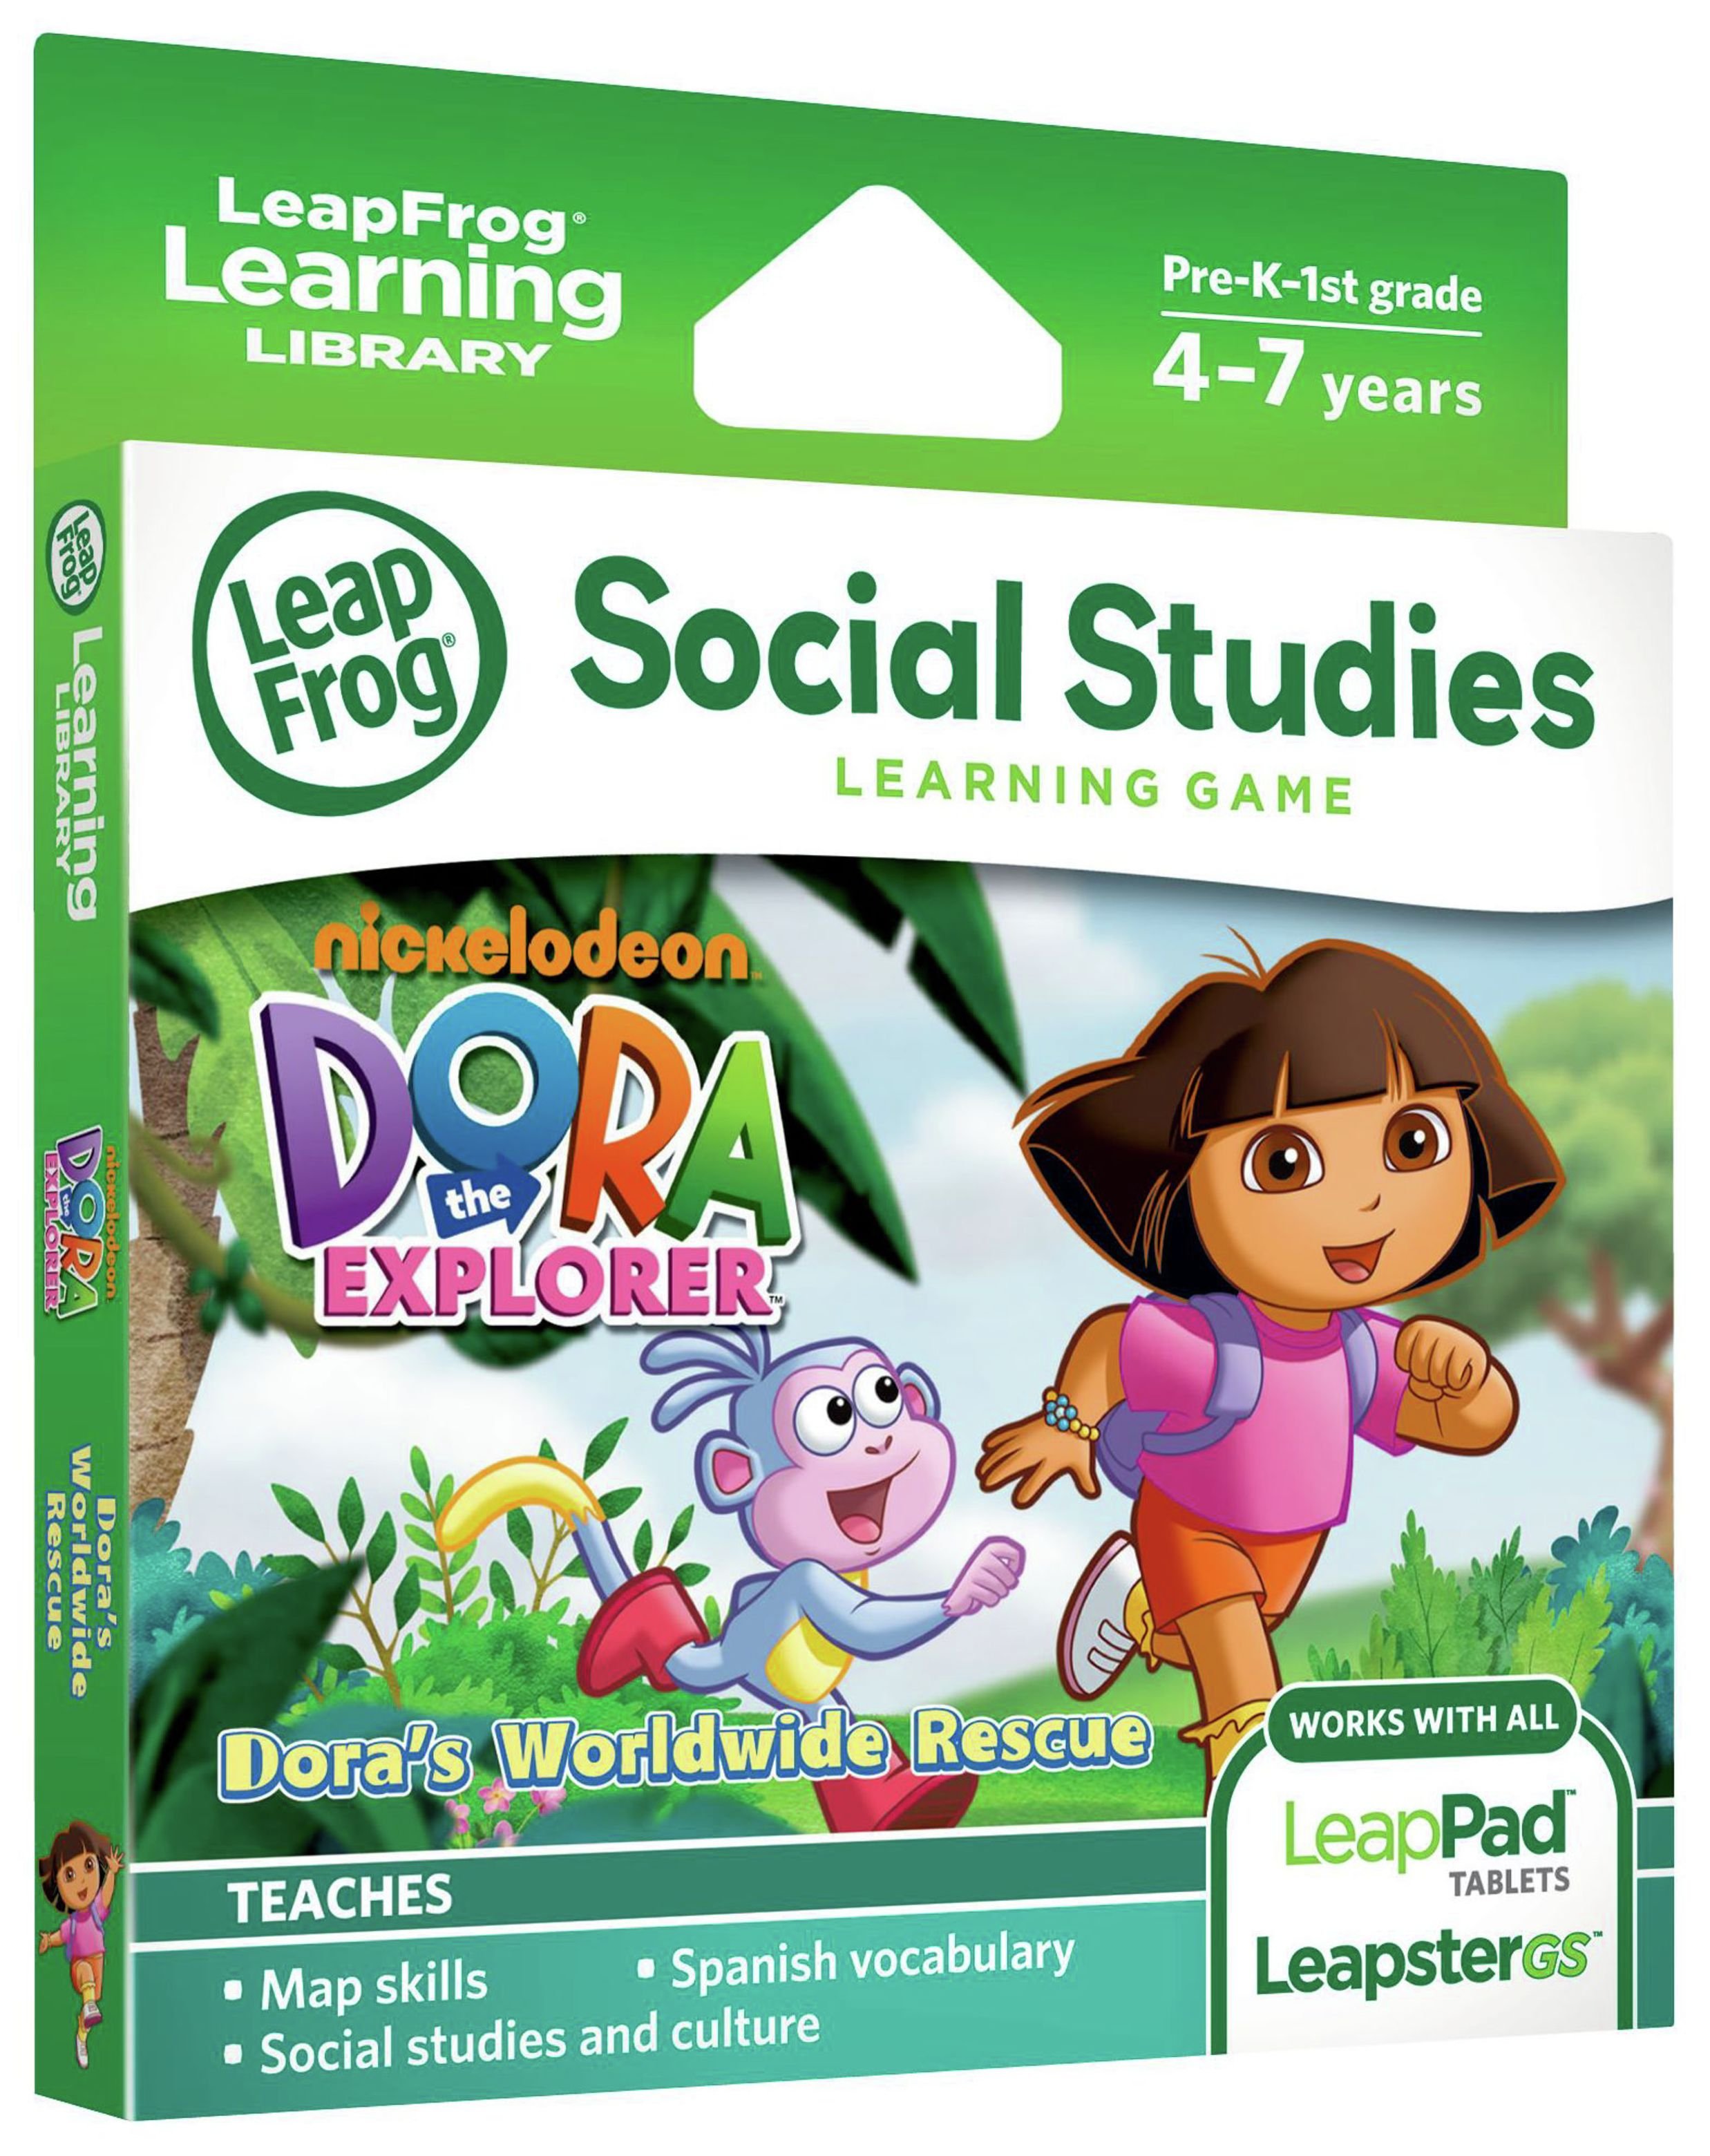 LeapFrog Dora the Explorer Learning Game. review